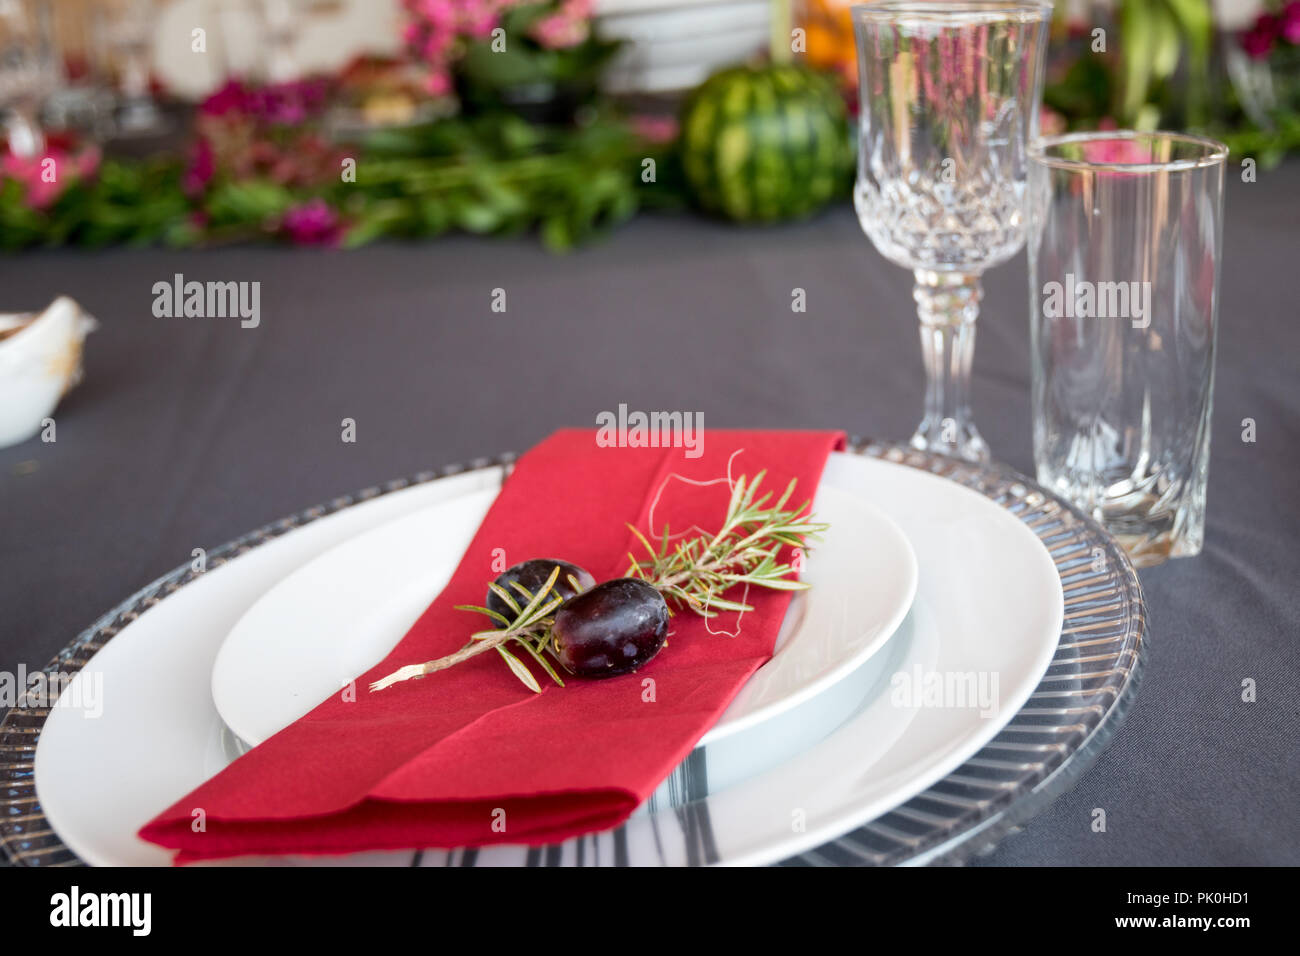 La table du déjeuner ensemble avec des plaques en gris et blanc, de belles assiettes, serviette rouge, petit arbre décoratif,direction des deux cépages avec décor floral et de fruits. Banque D'Images